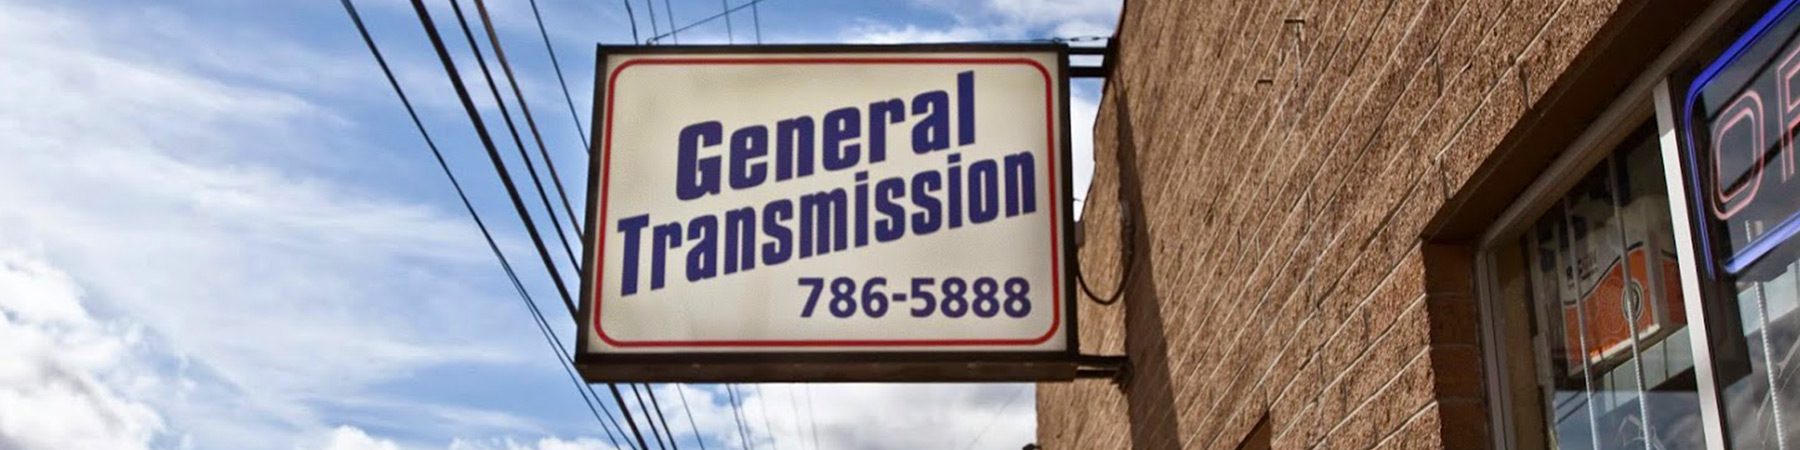 General Transmission exterior sign